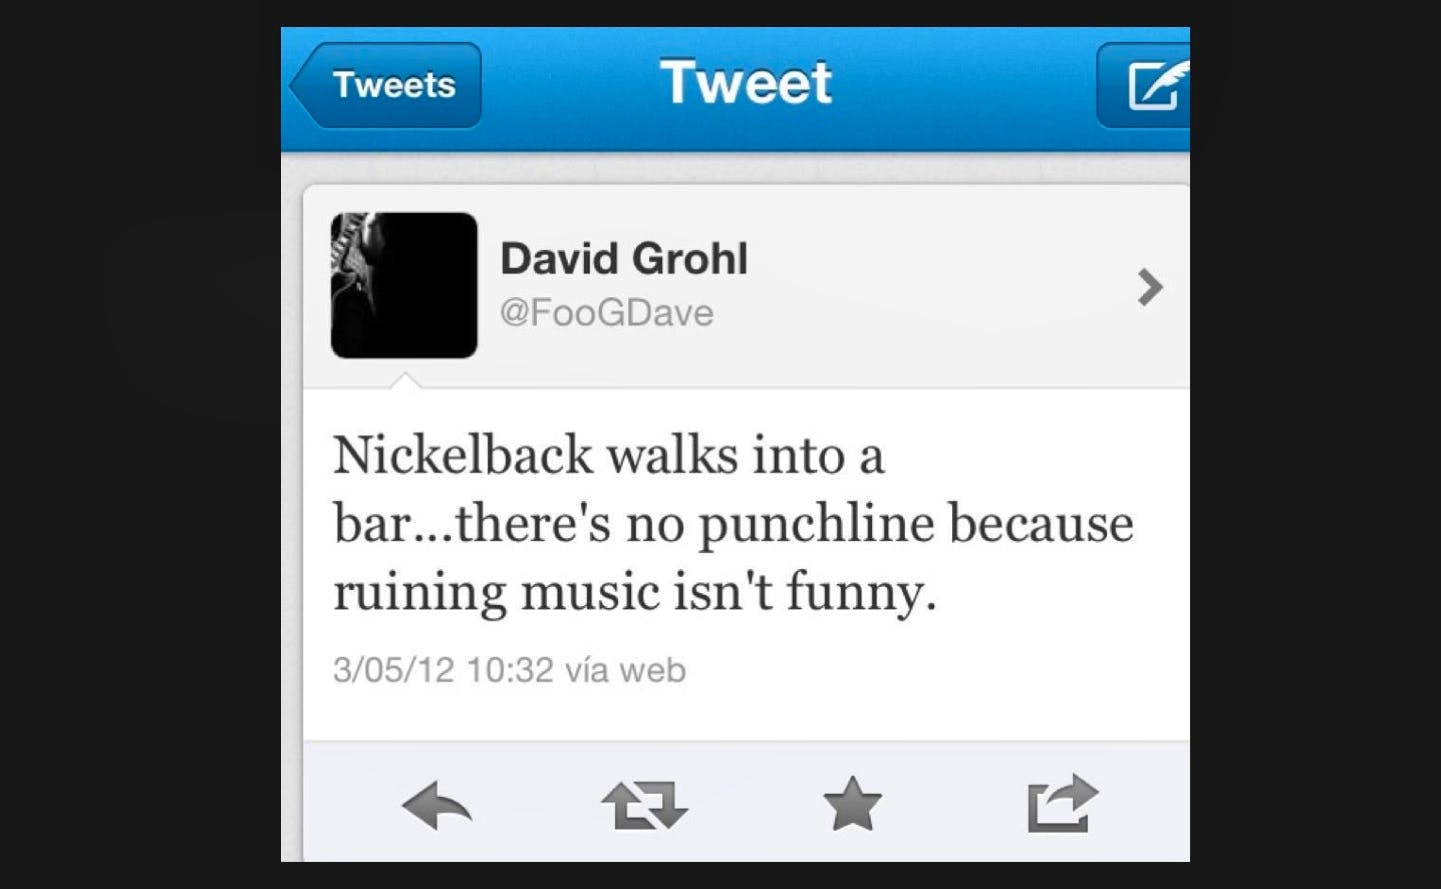 Niemand mag Nickelback, auch Dave nicht. 